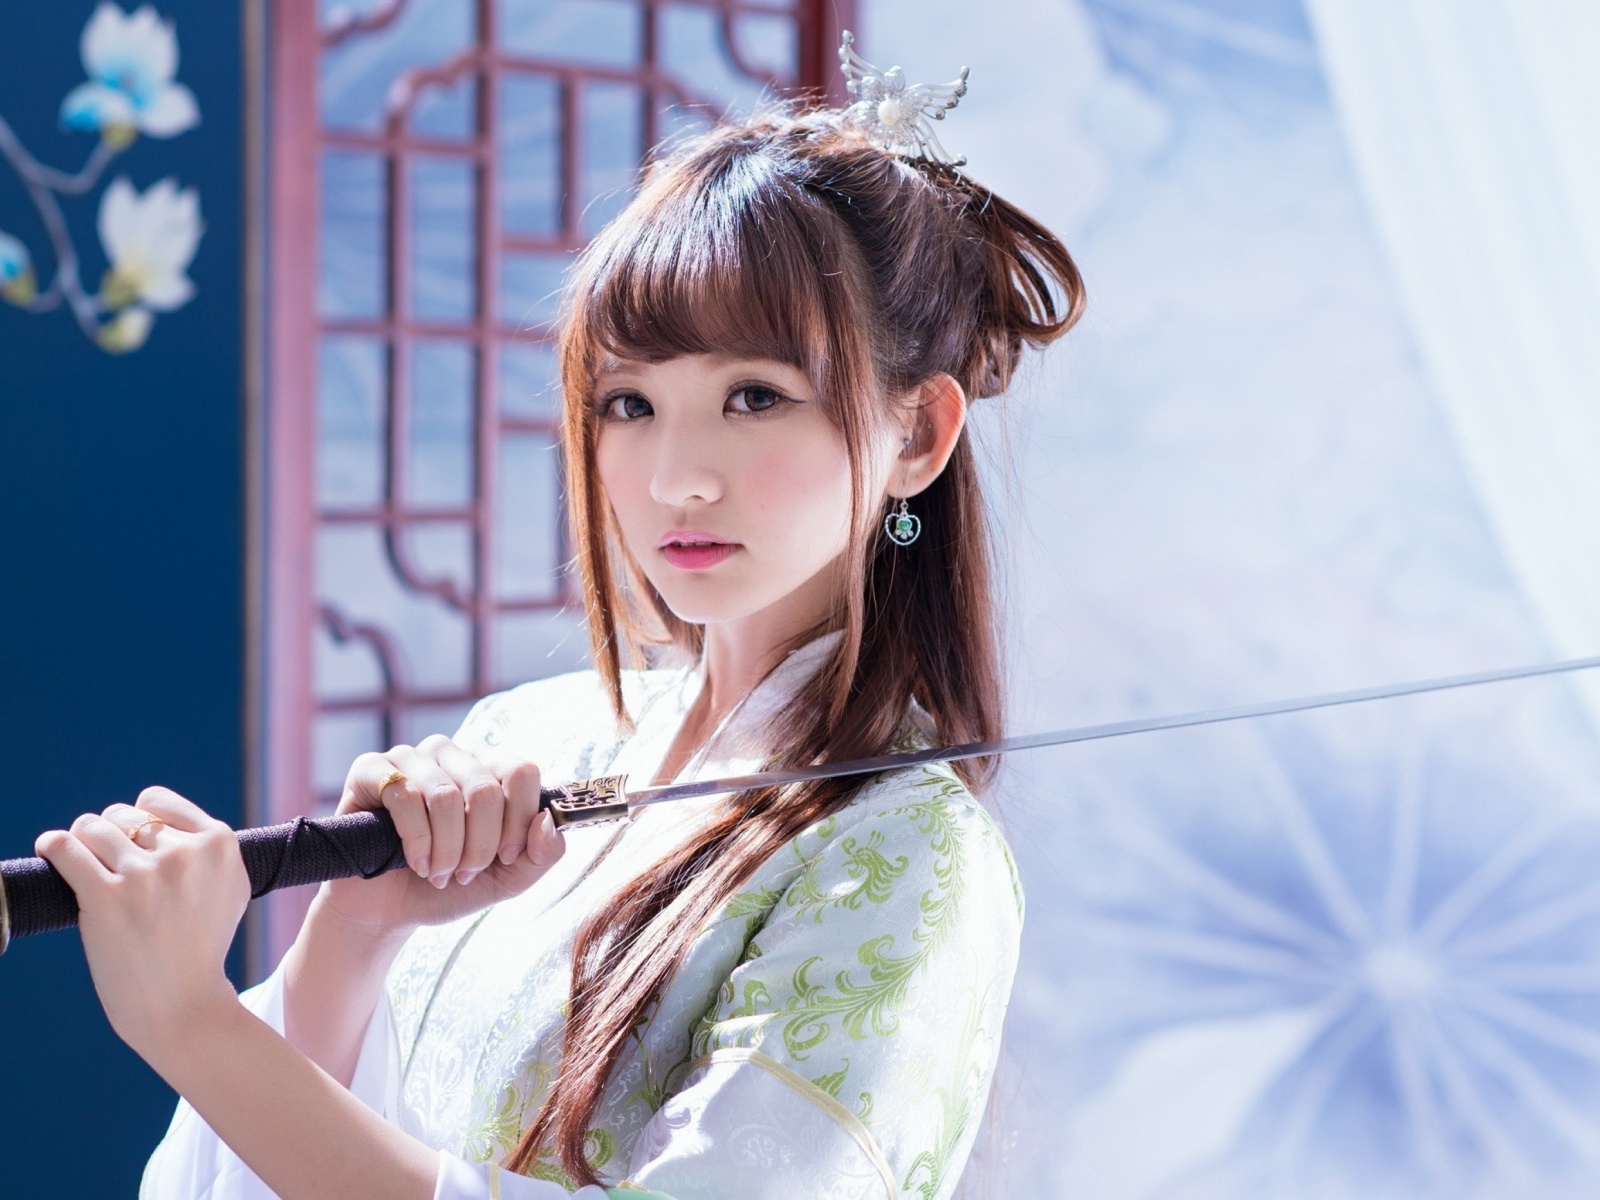 Samurai Girl with Katana wallpaper 1600x1200